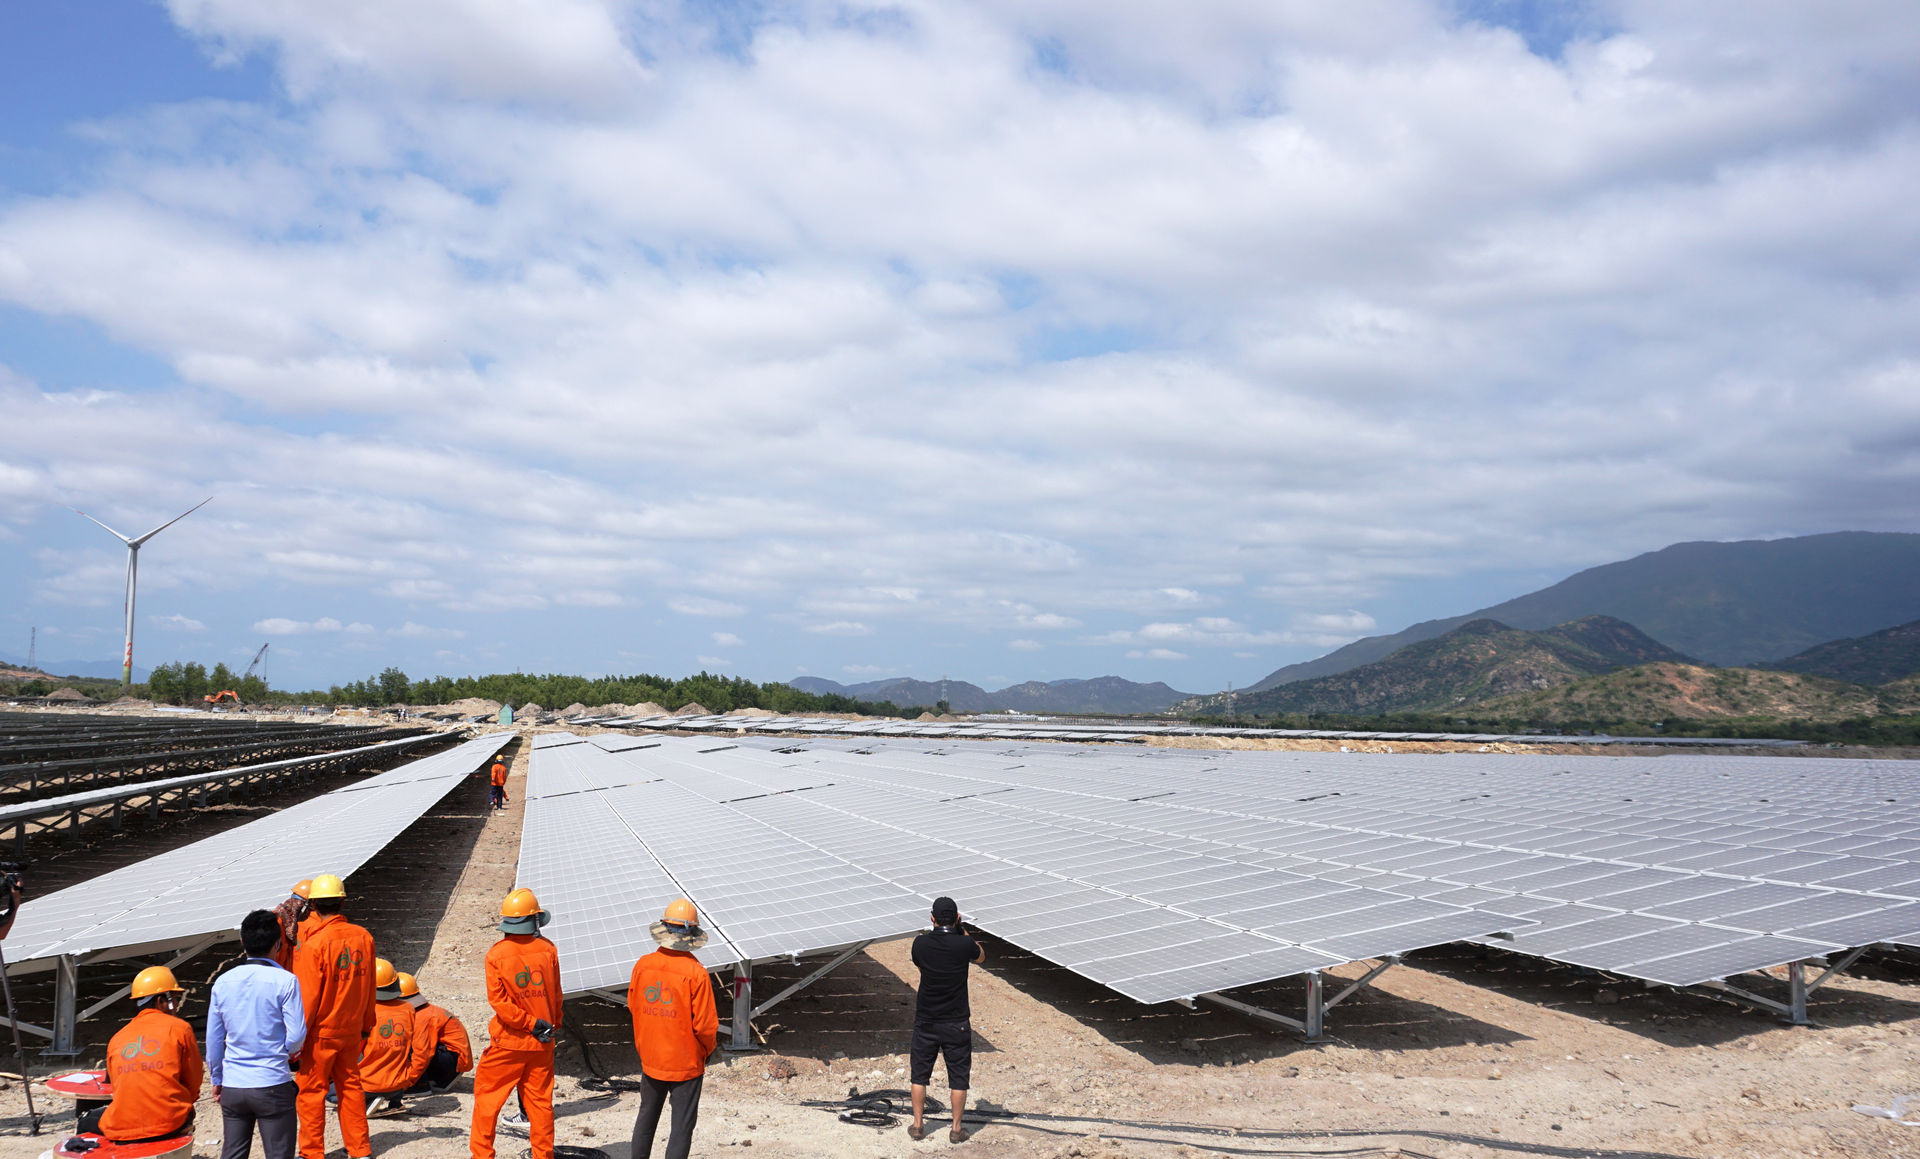 UBND tỉnh Ninh Thuận cùng Tập đoàn Trung Nam khởi công dự án Nhà máy điện mặt trời trên vùng diện tích gần 300 ha tại xã Bắc Phong và Xã Lợi Hải, huyện Thuận Bắc vào năm ngoái (7/7/2018).